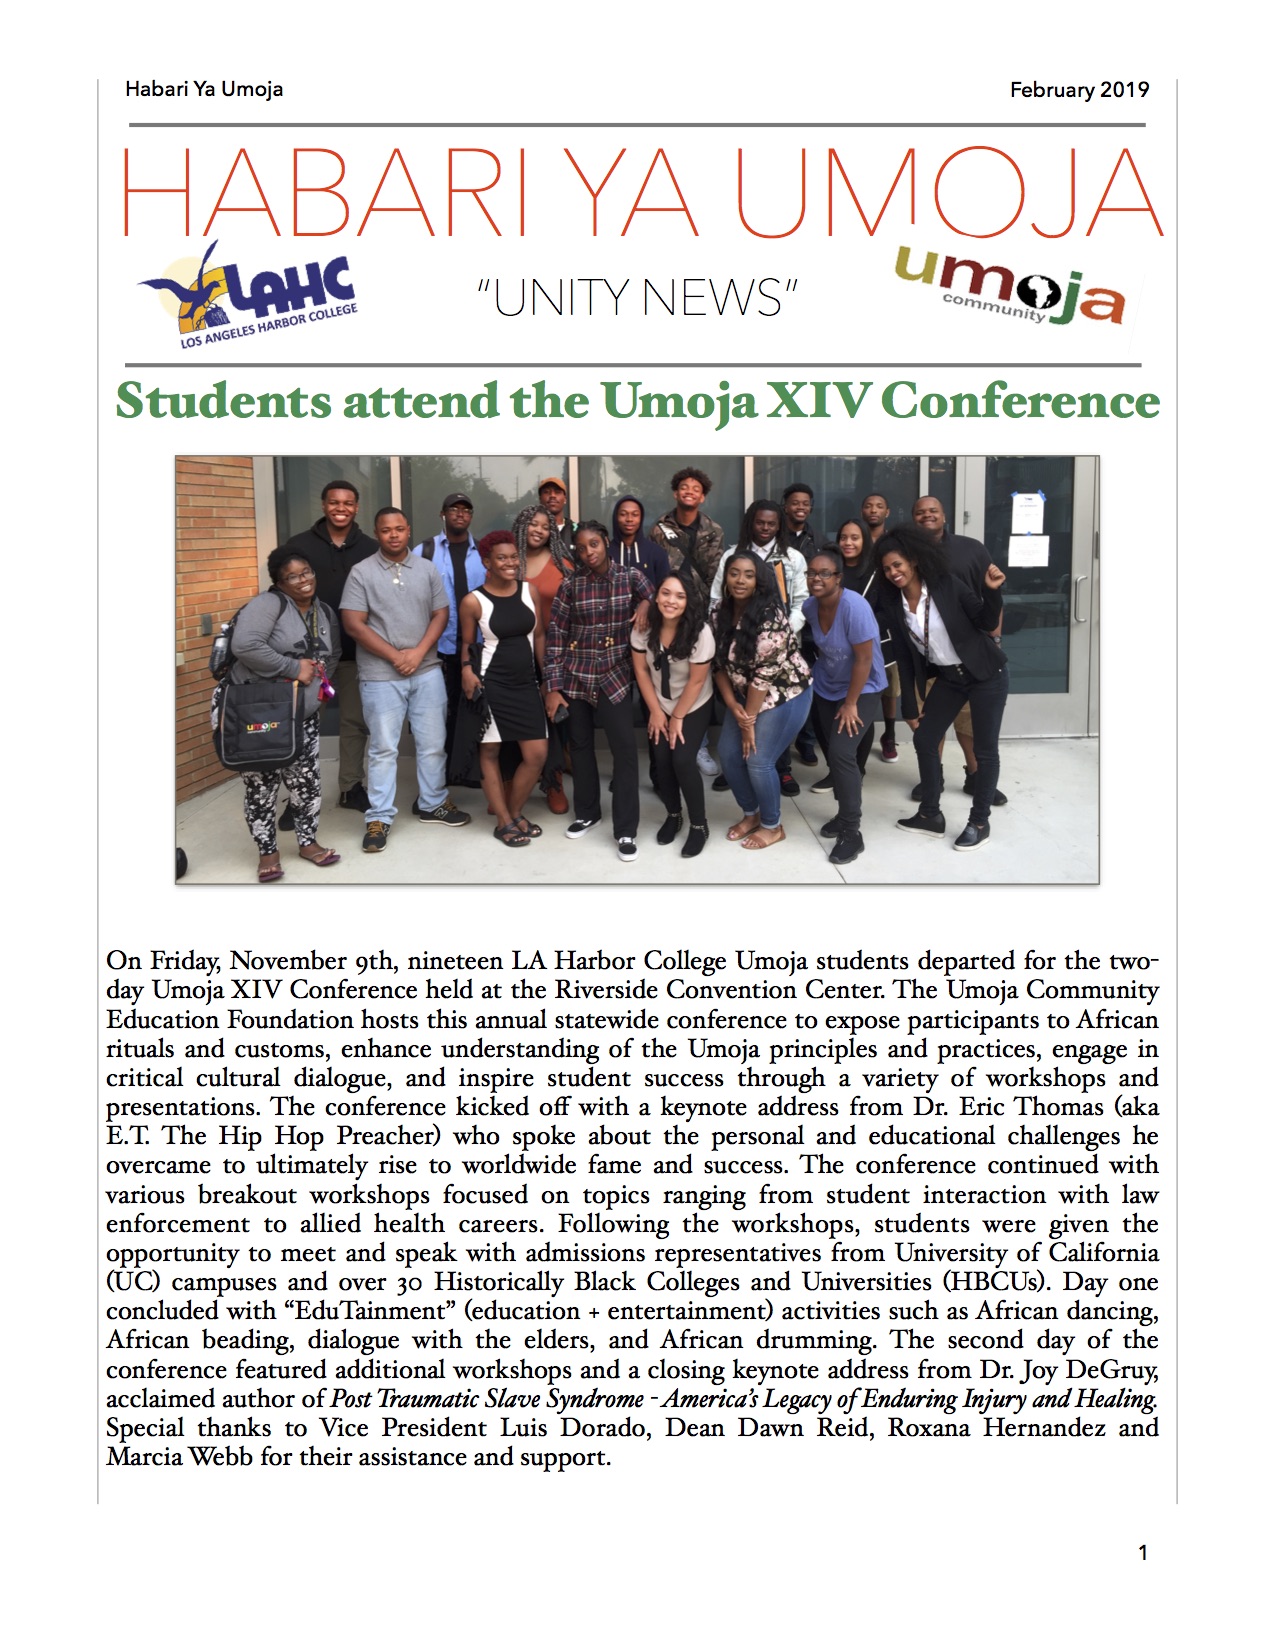 Umoja Newsletter February 2019